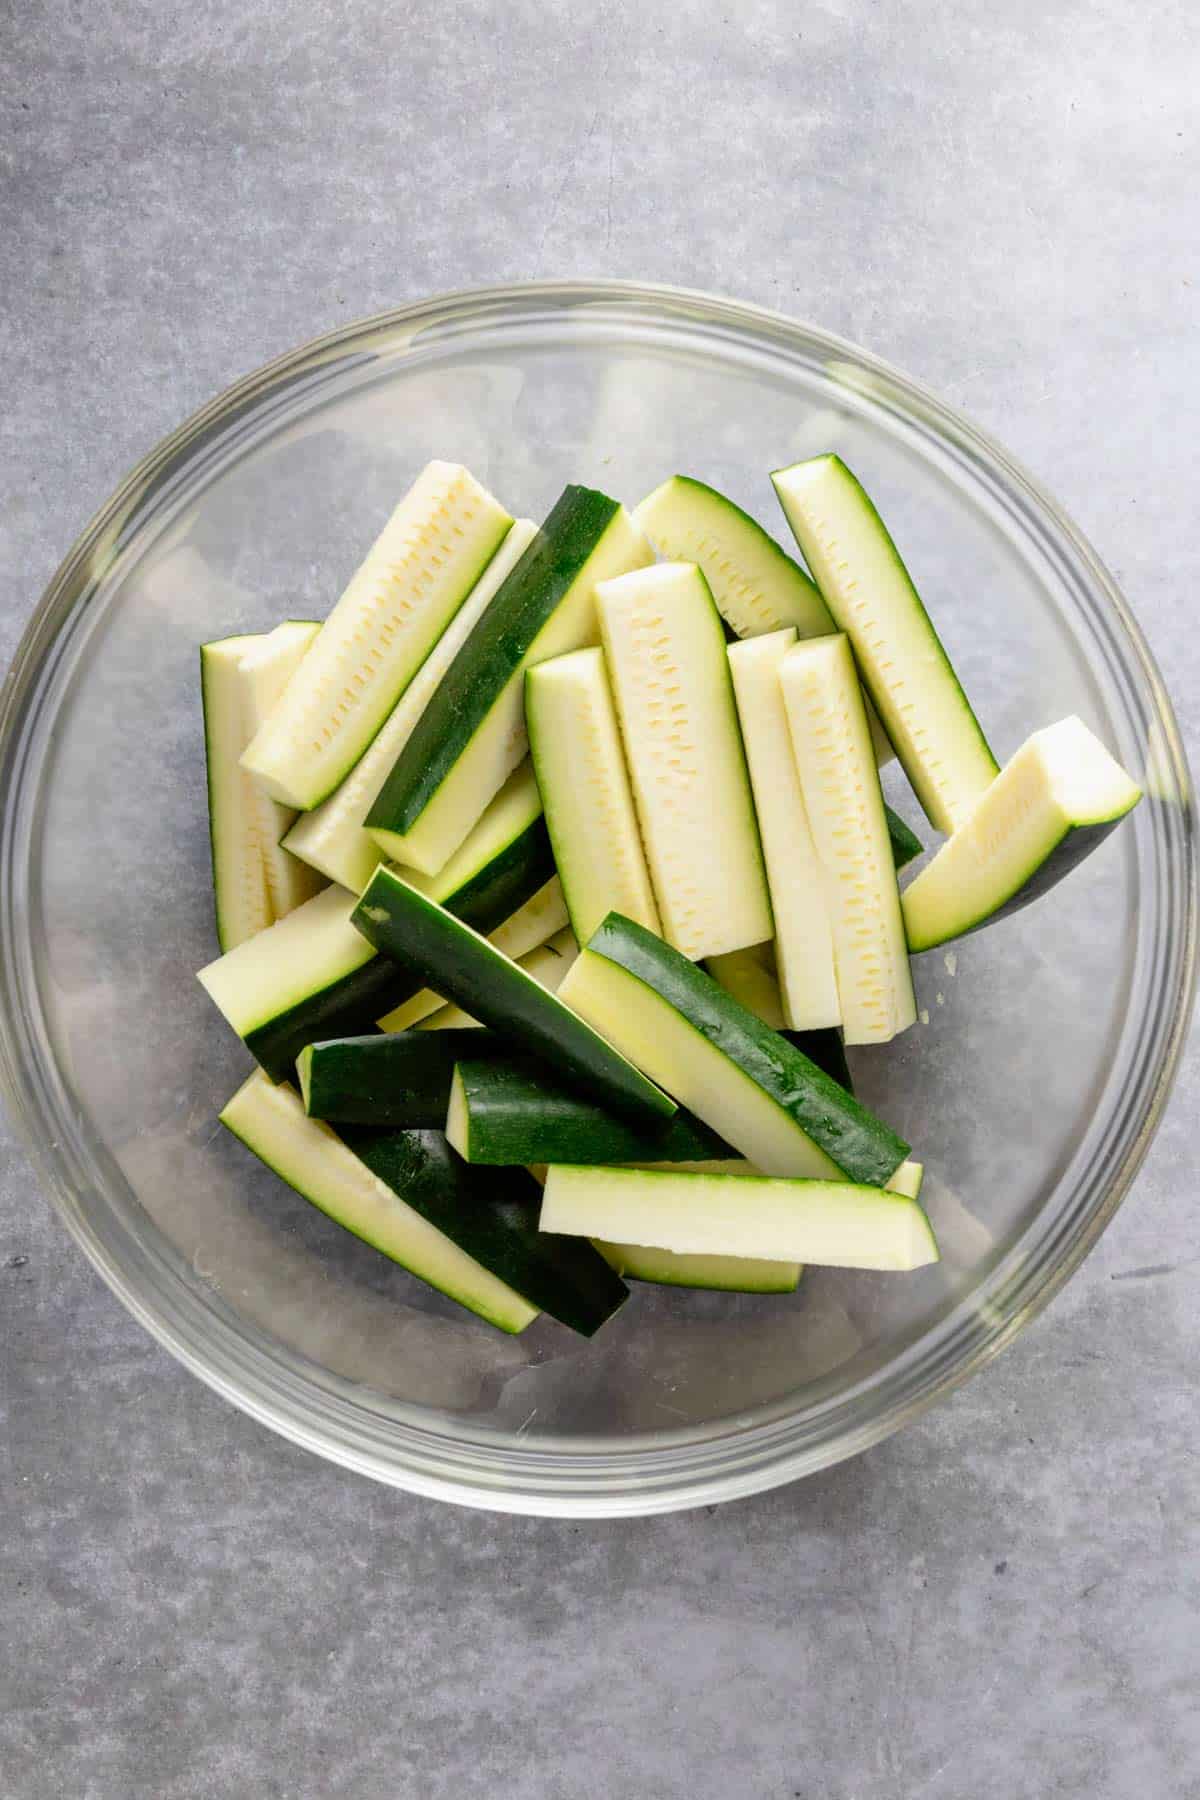 raw zucchini sticks in a bowl.